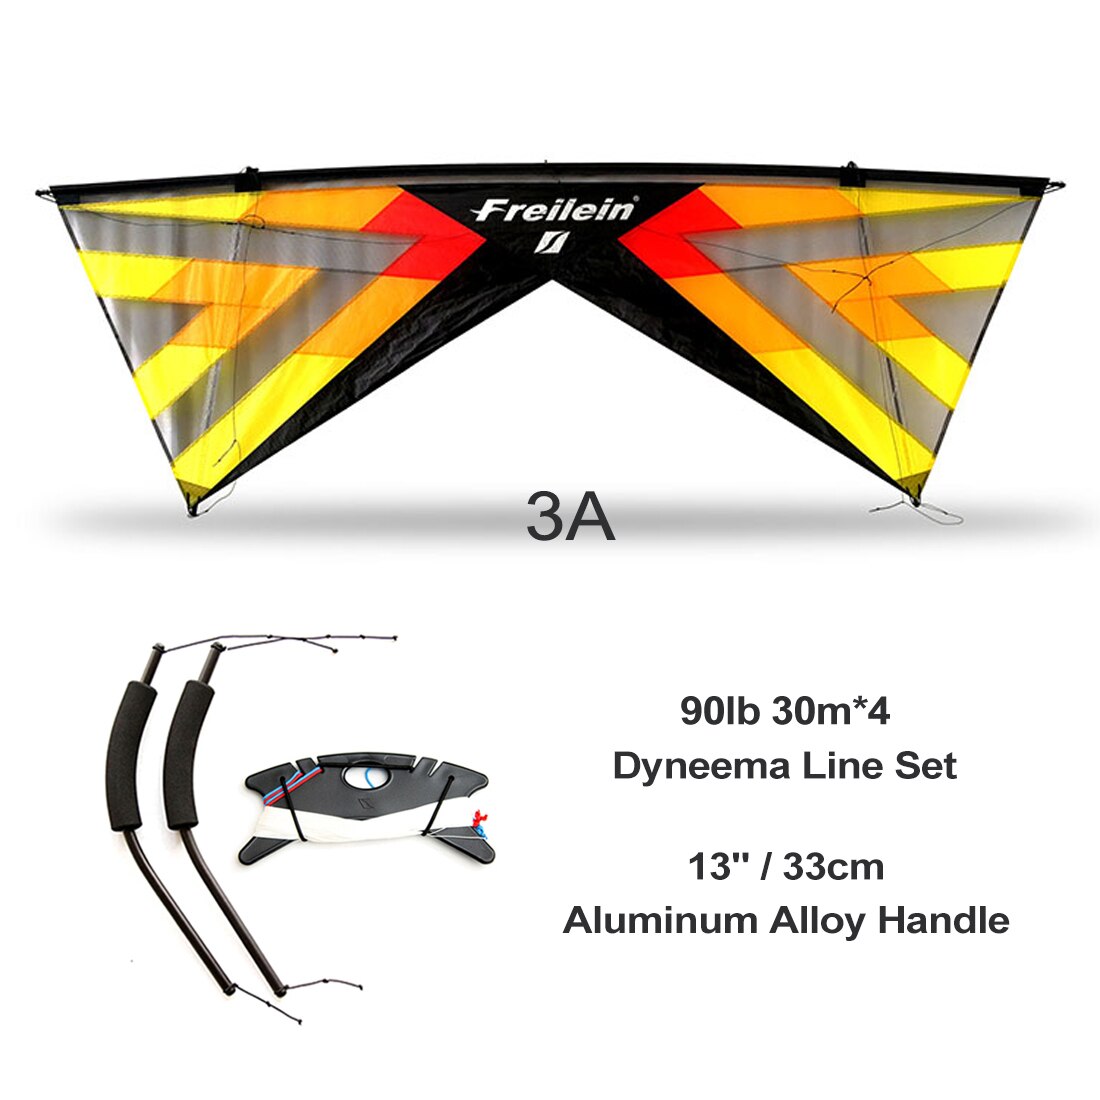 Hot Sale Freilein Windrider Ⅱ X 4 Line Stunt Kite Professional